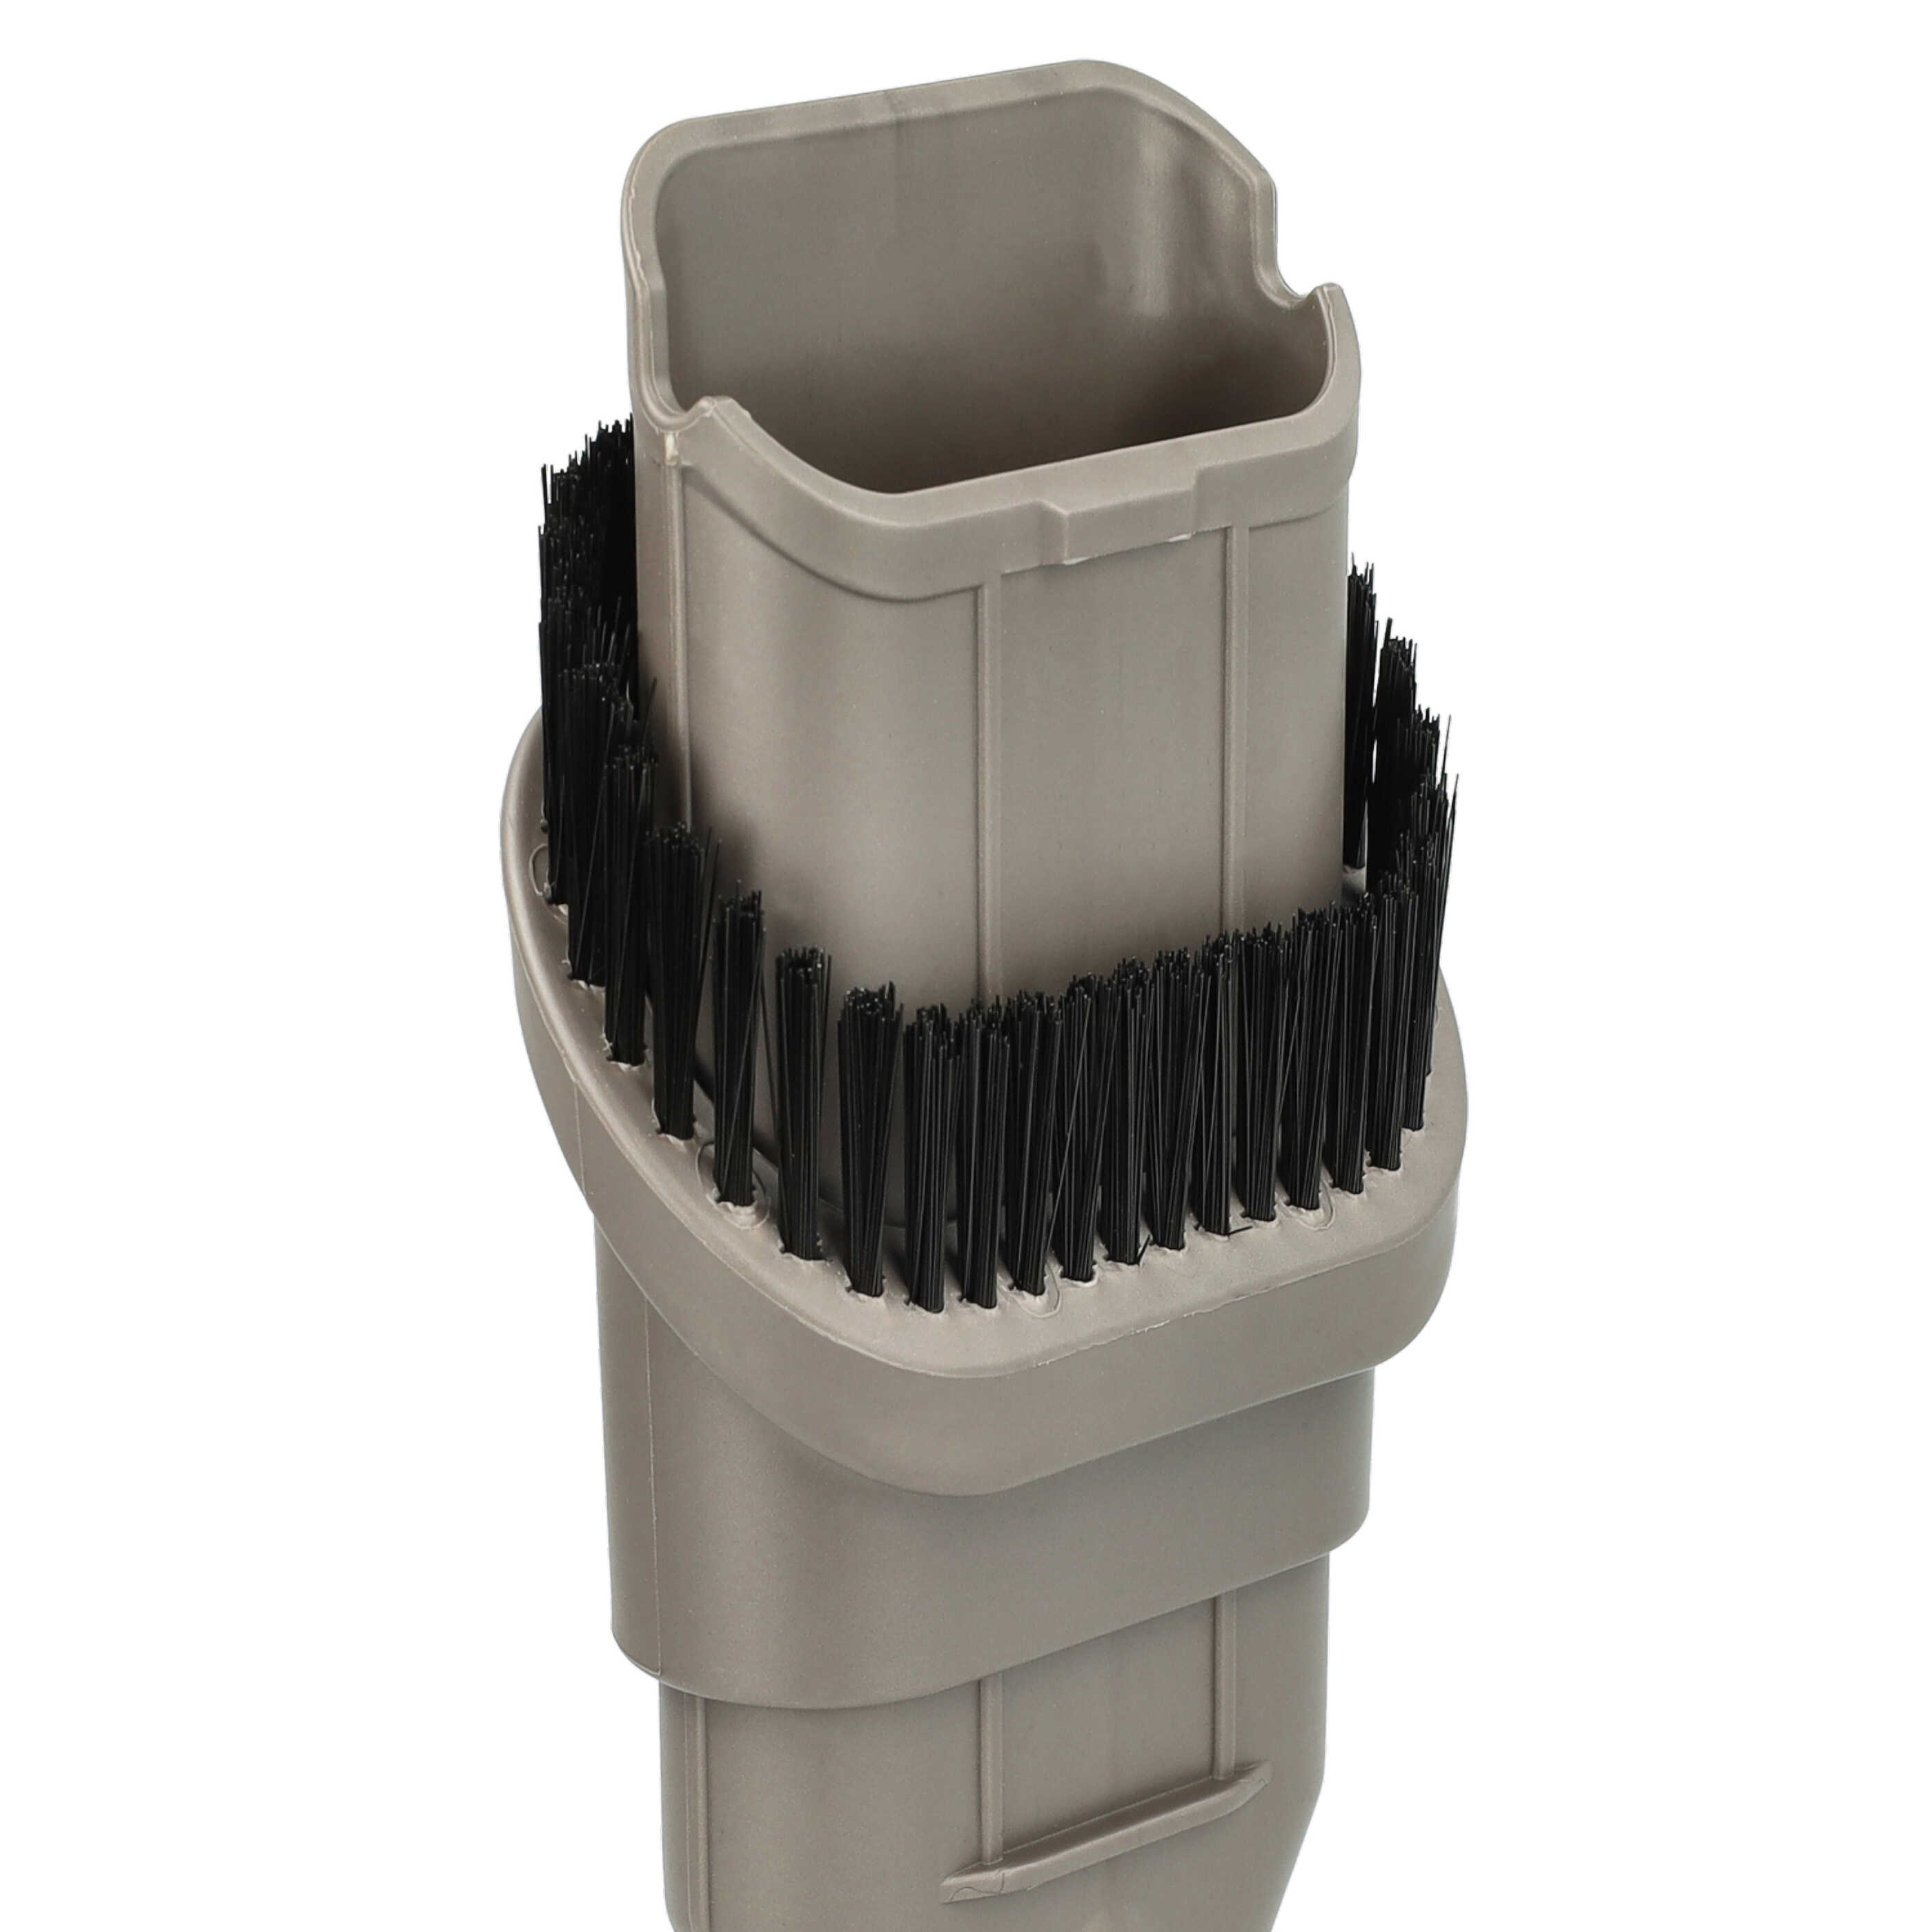 Kit d'accessoires 6 pcs pour aspirateur Dyson rechange pour Dyson 967477-03, 967763-01, 967612-01, 967482-01